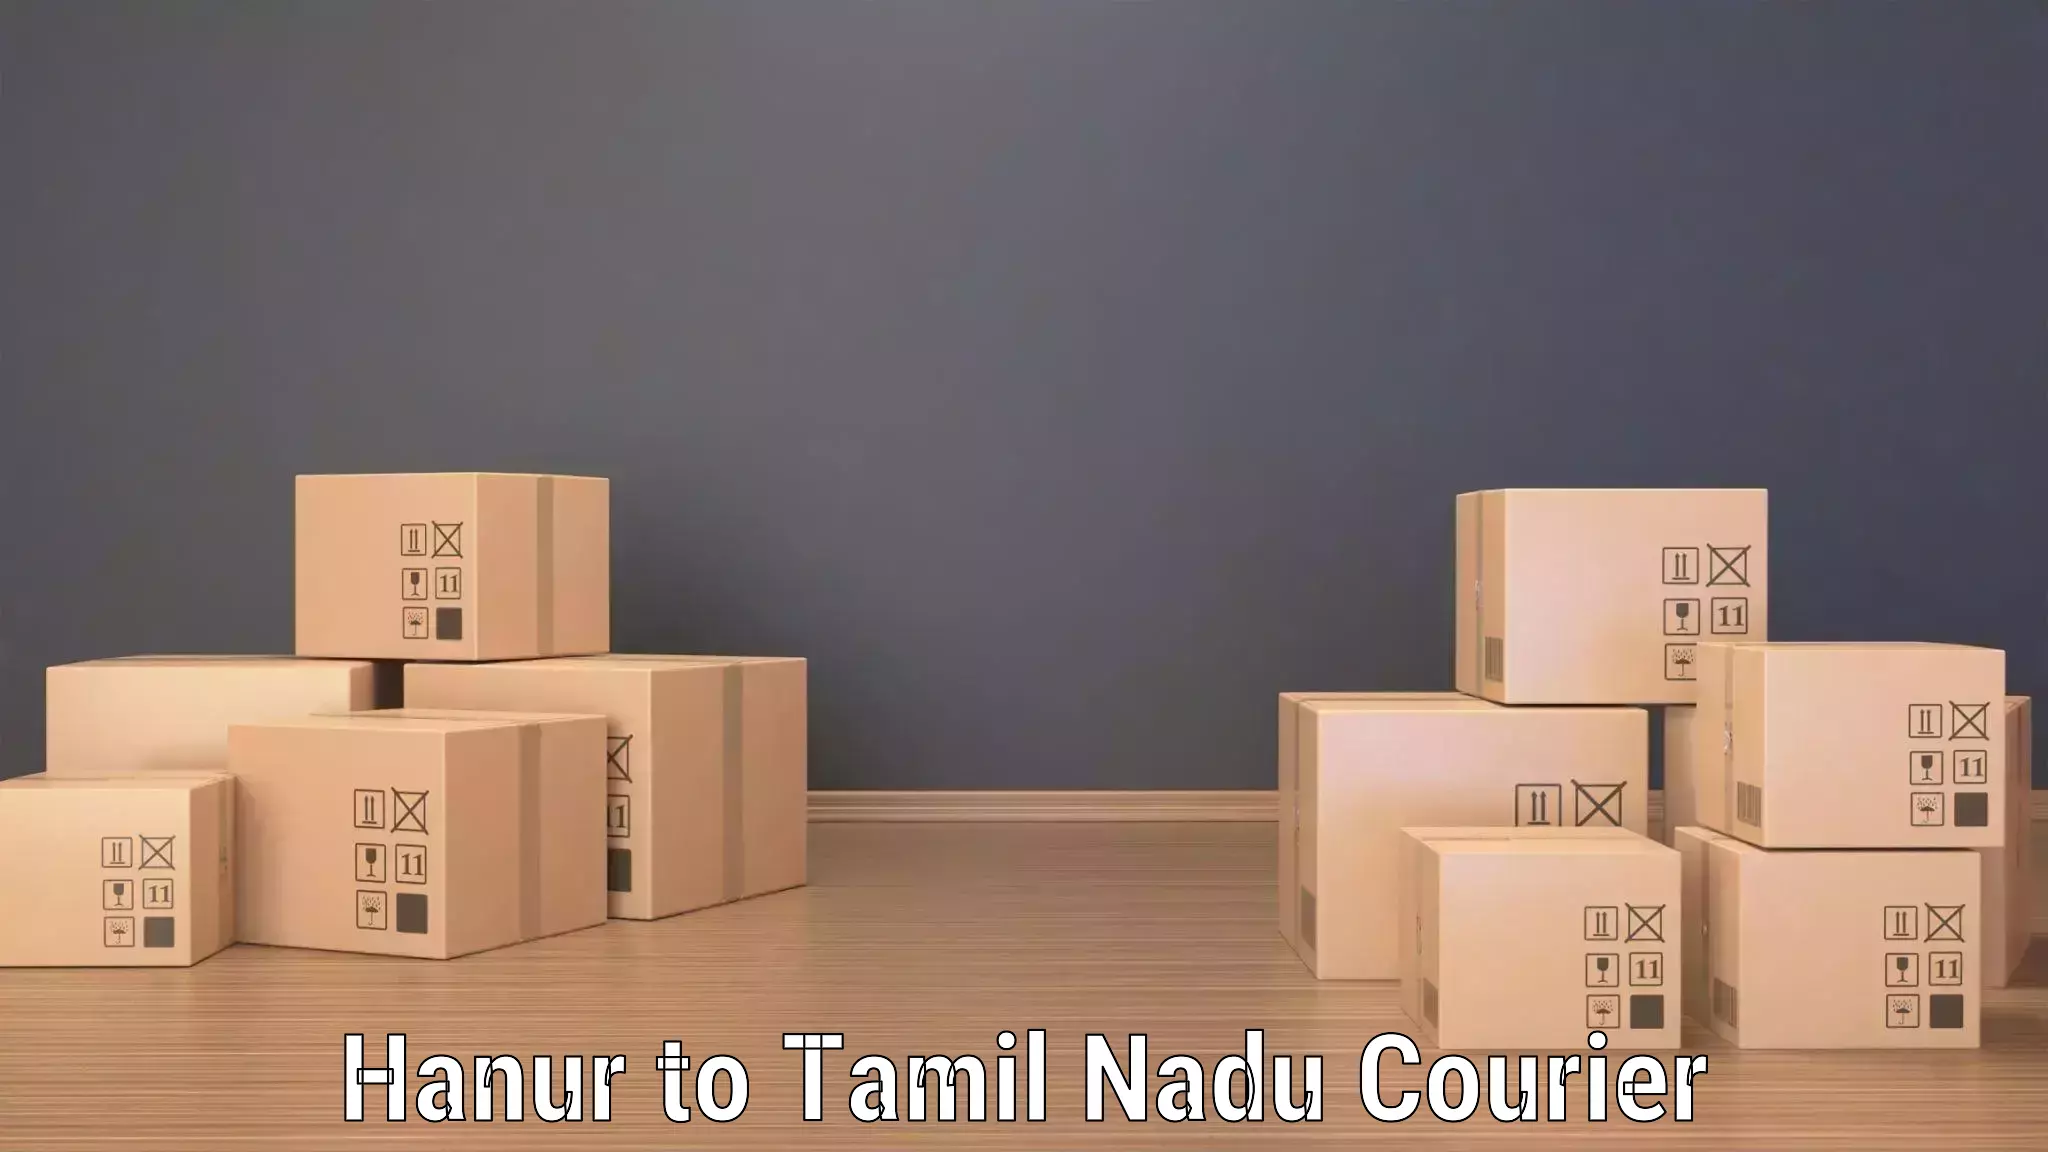 Efficient freight service Hanur to IIIT Tiruchirappalli